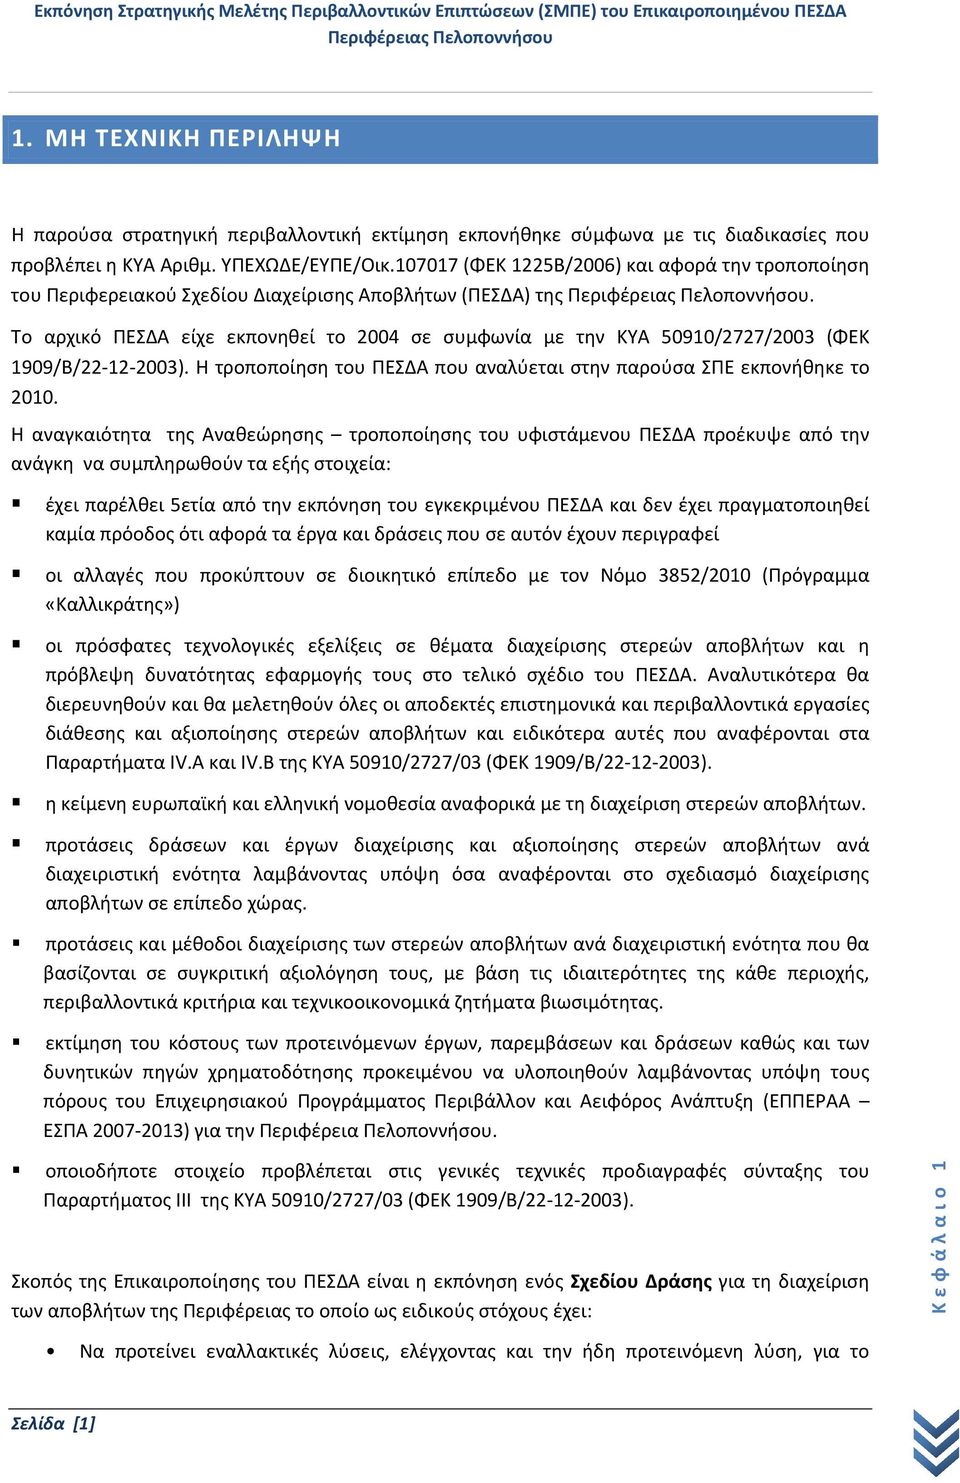 Το αρχικό ΠΕΣΔΑ είχε εκπονηθεί το 2004 σε συμφωνία με την ΚΥΑ 50910/2727/2003 (ΦΕΚ 1909/Β/22 12 2003). Η τροποποίηση του ΠΕΣΔΑ που αναλύεται στην παρούσα ΣΠΕ εκπονήθηκε το 2010.